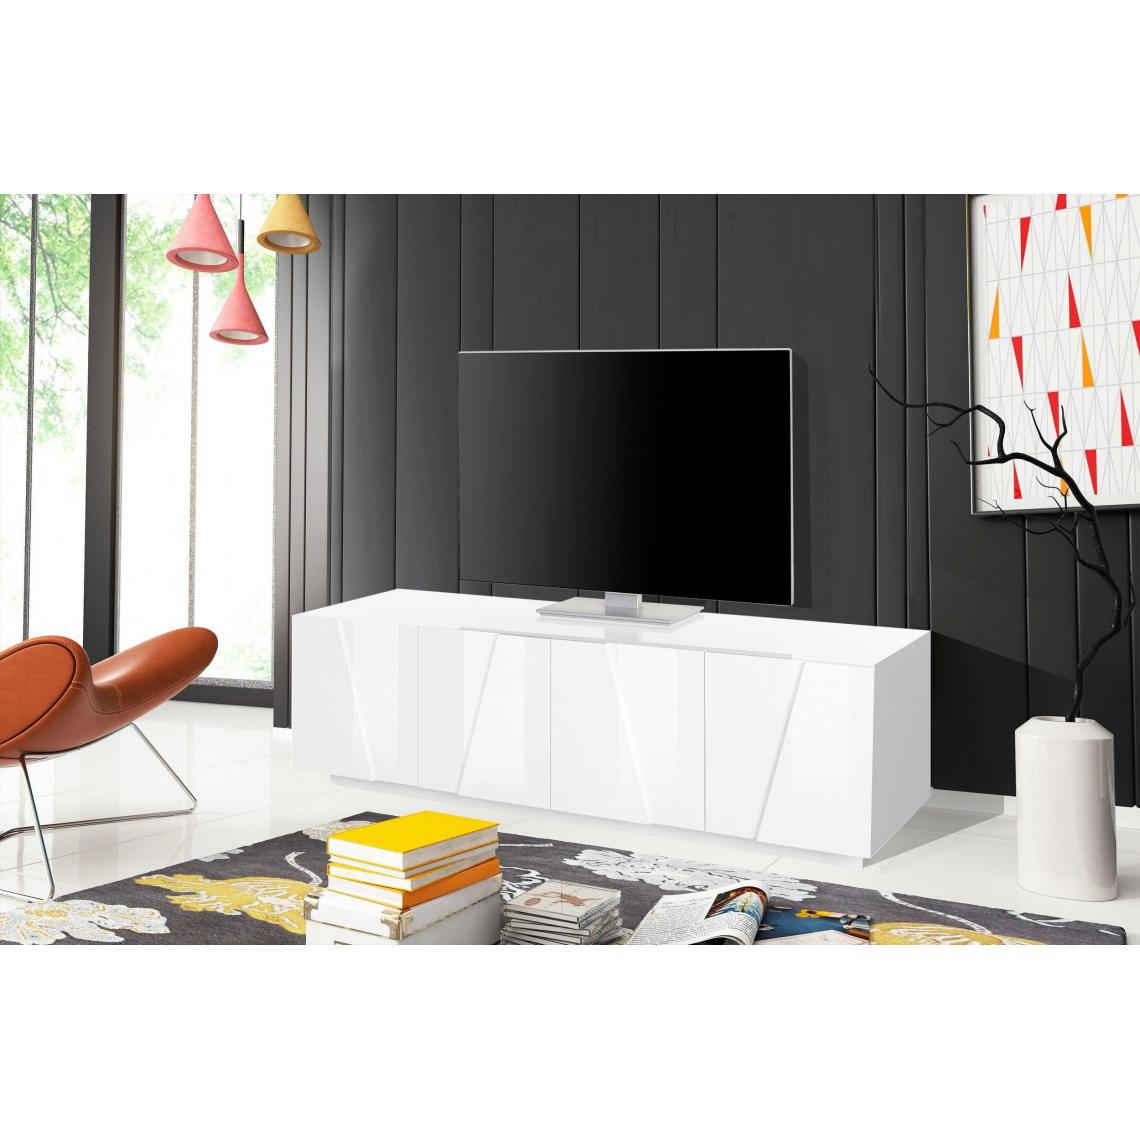 Alter - Meuble TV de salon, Made in Italy, Meuble TV avec 4 portes avec détail, 162x44h46 cm, couleur blanc brillant - Meubles TV, Hi-Fi